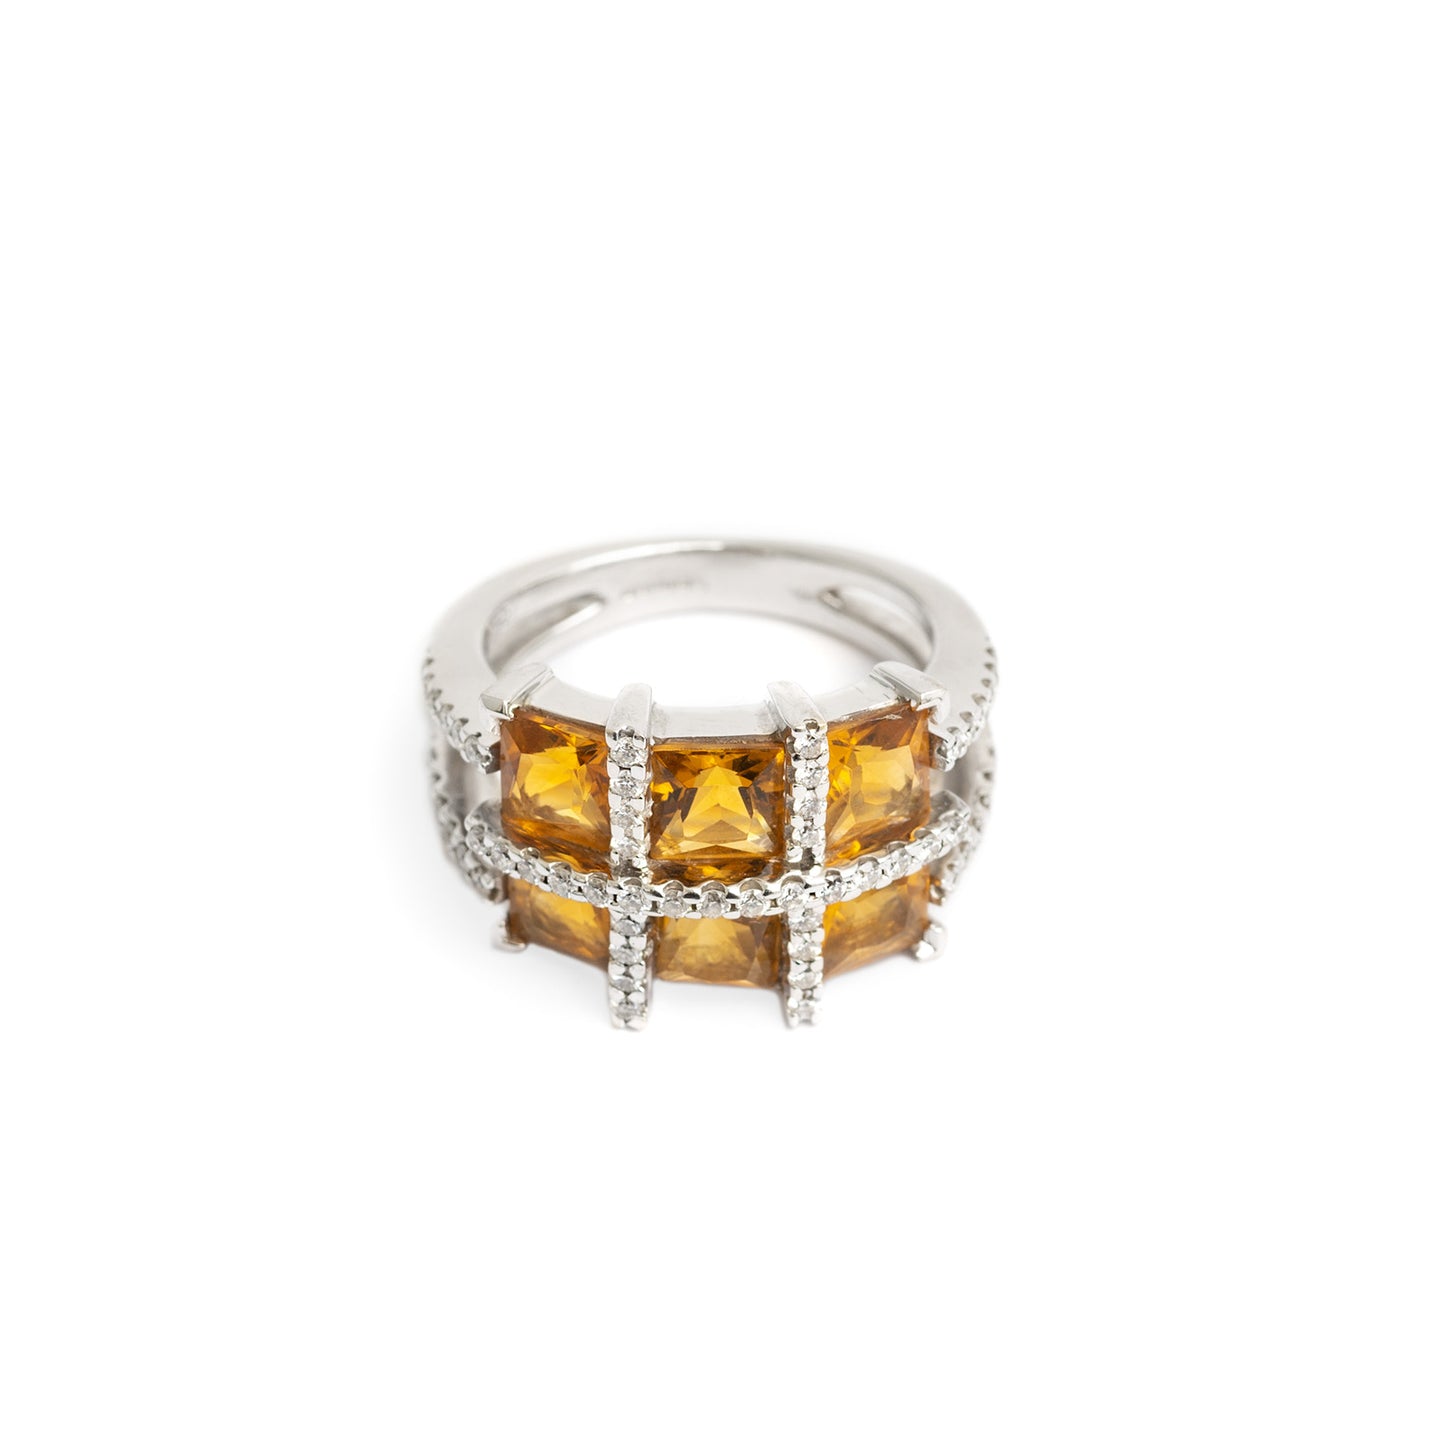 Fine 18ct White Gold Diamond & Square Cut Citrine Ring Size M (Code A351)